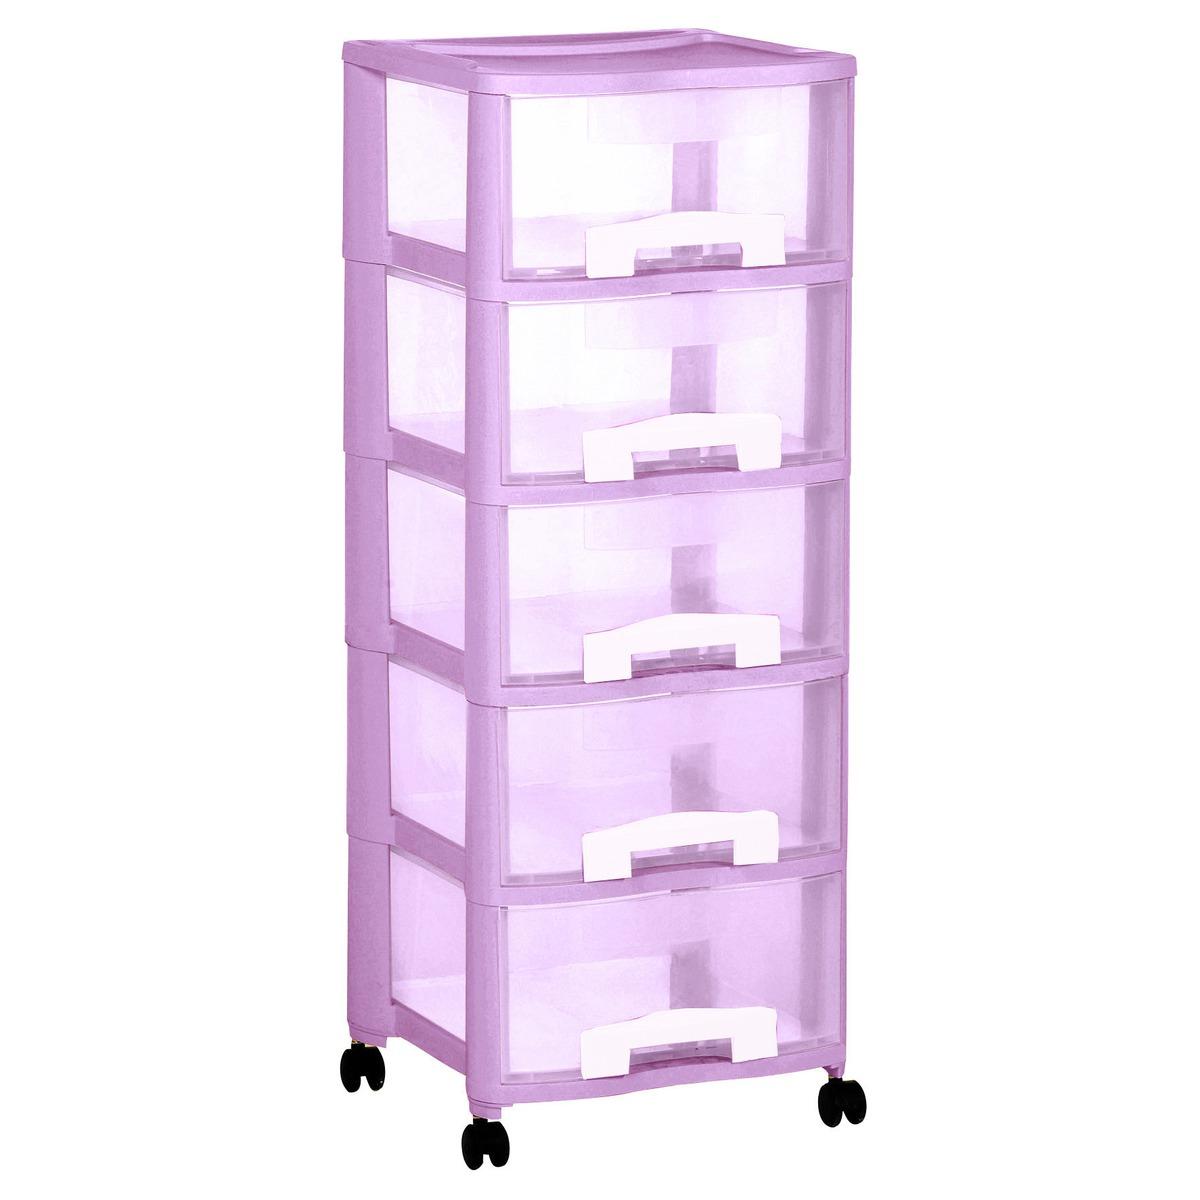 Tour de rangement 5 tiroirs de 20 litres en plastique Allibert - violet, blanc